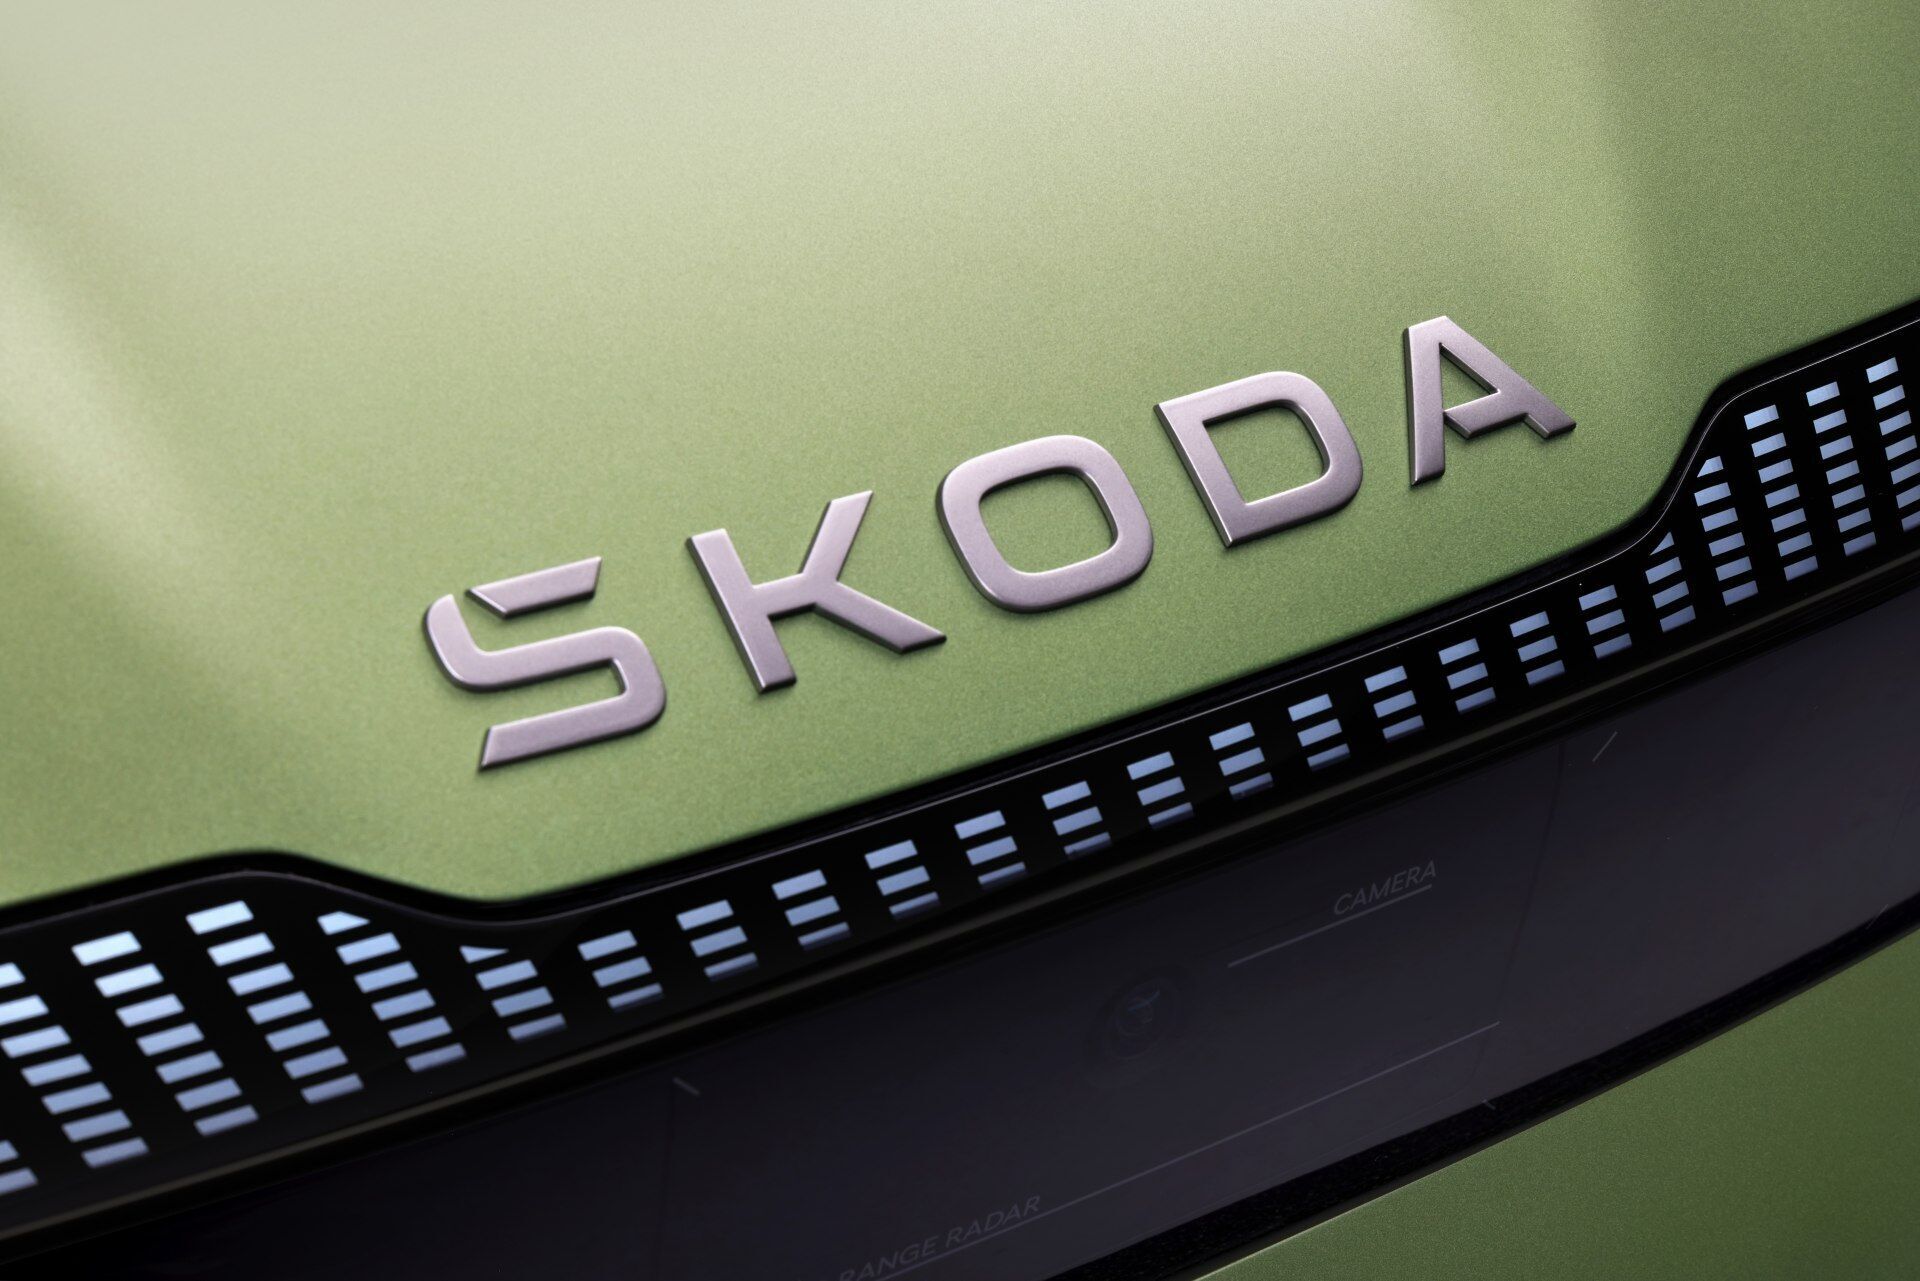 Вместо изображения крылатой стрелы размещен текстовый логотип Skoda